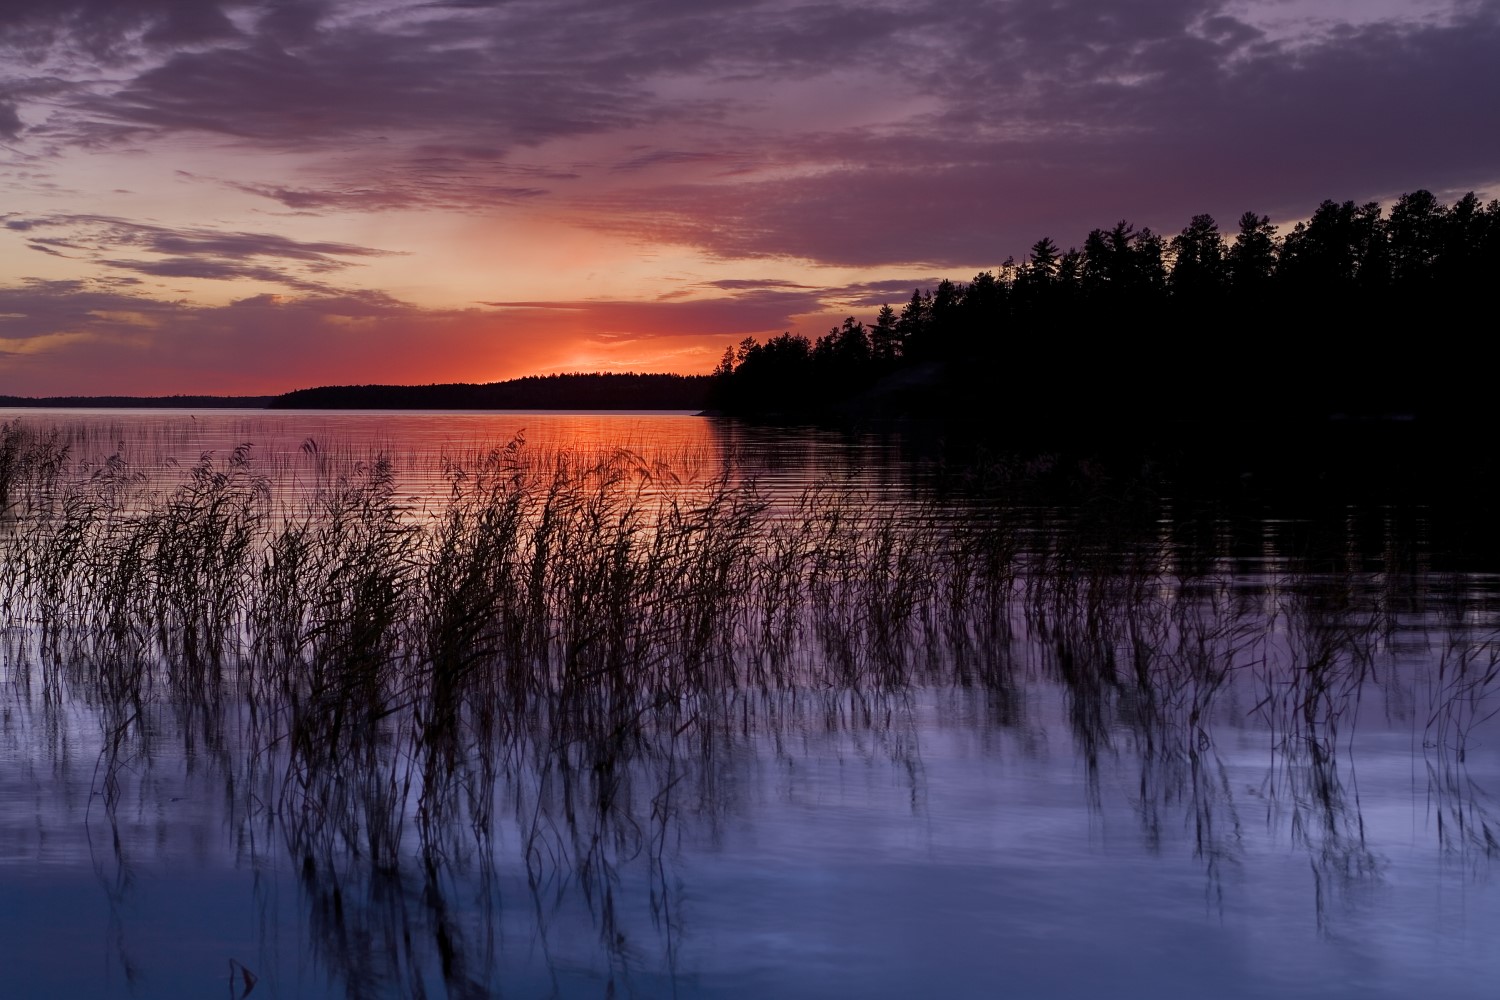 Un lac indigo avec des roseaux au premier plan. Au loin, le soleil se couche, donnant au ciel des teintes d’orange, de mauve et de violet. La silhouette d'un littoral se trouve sur la droite.